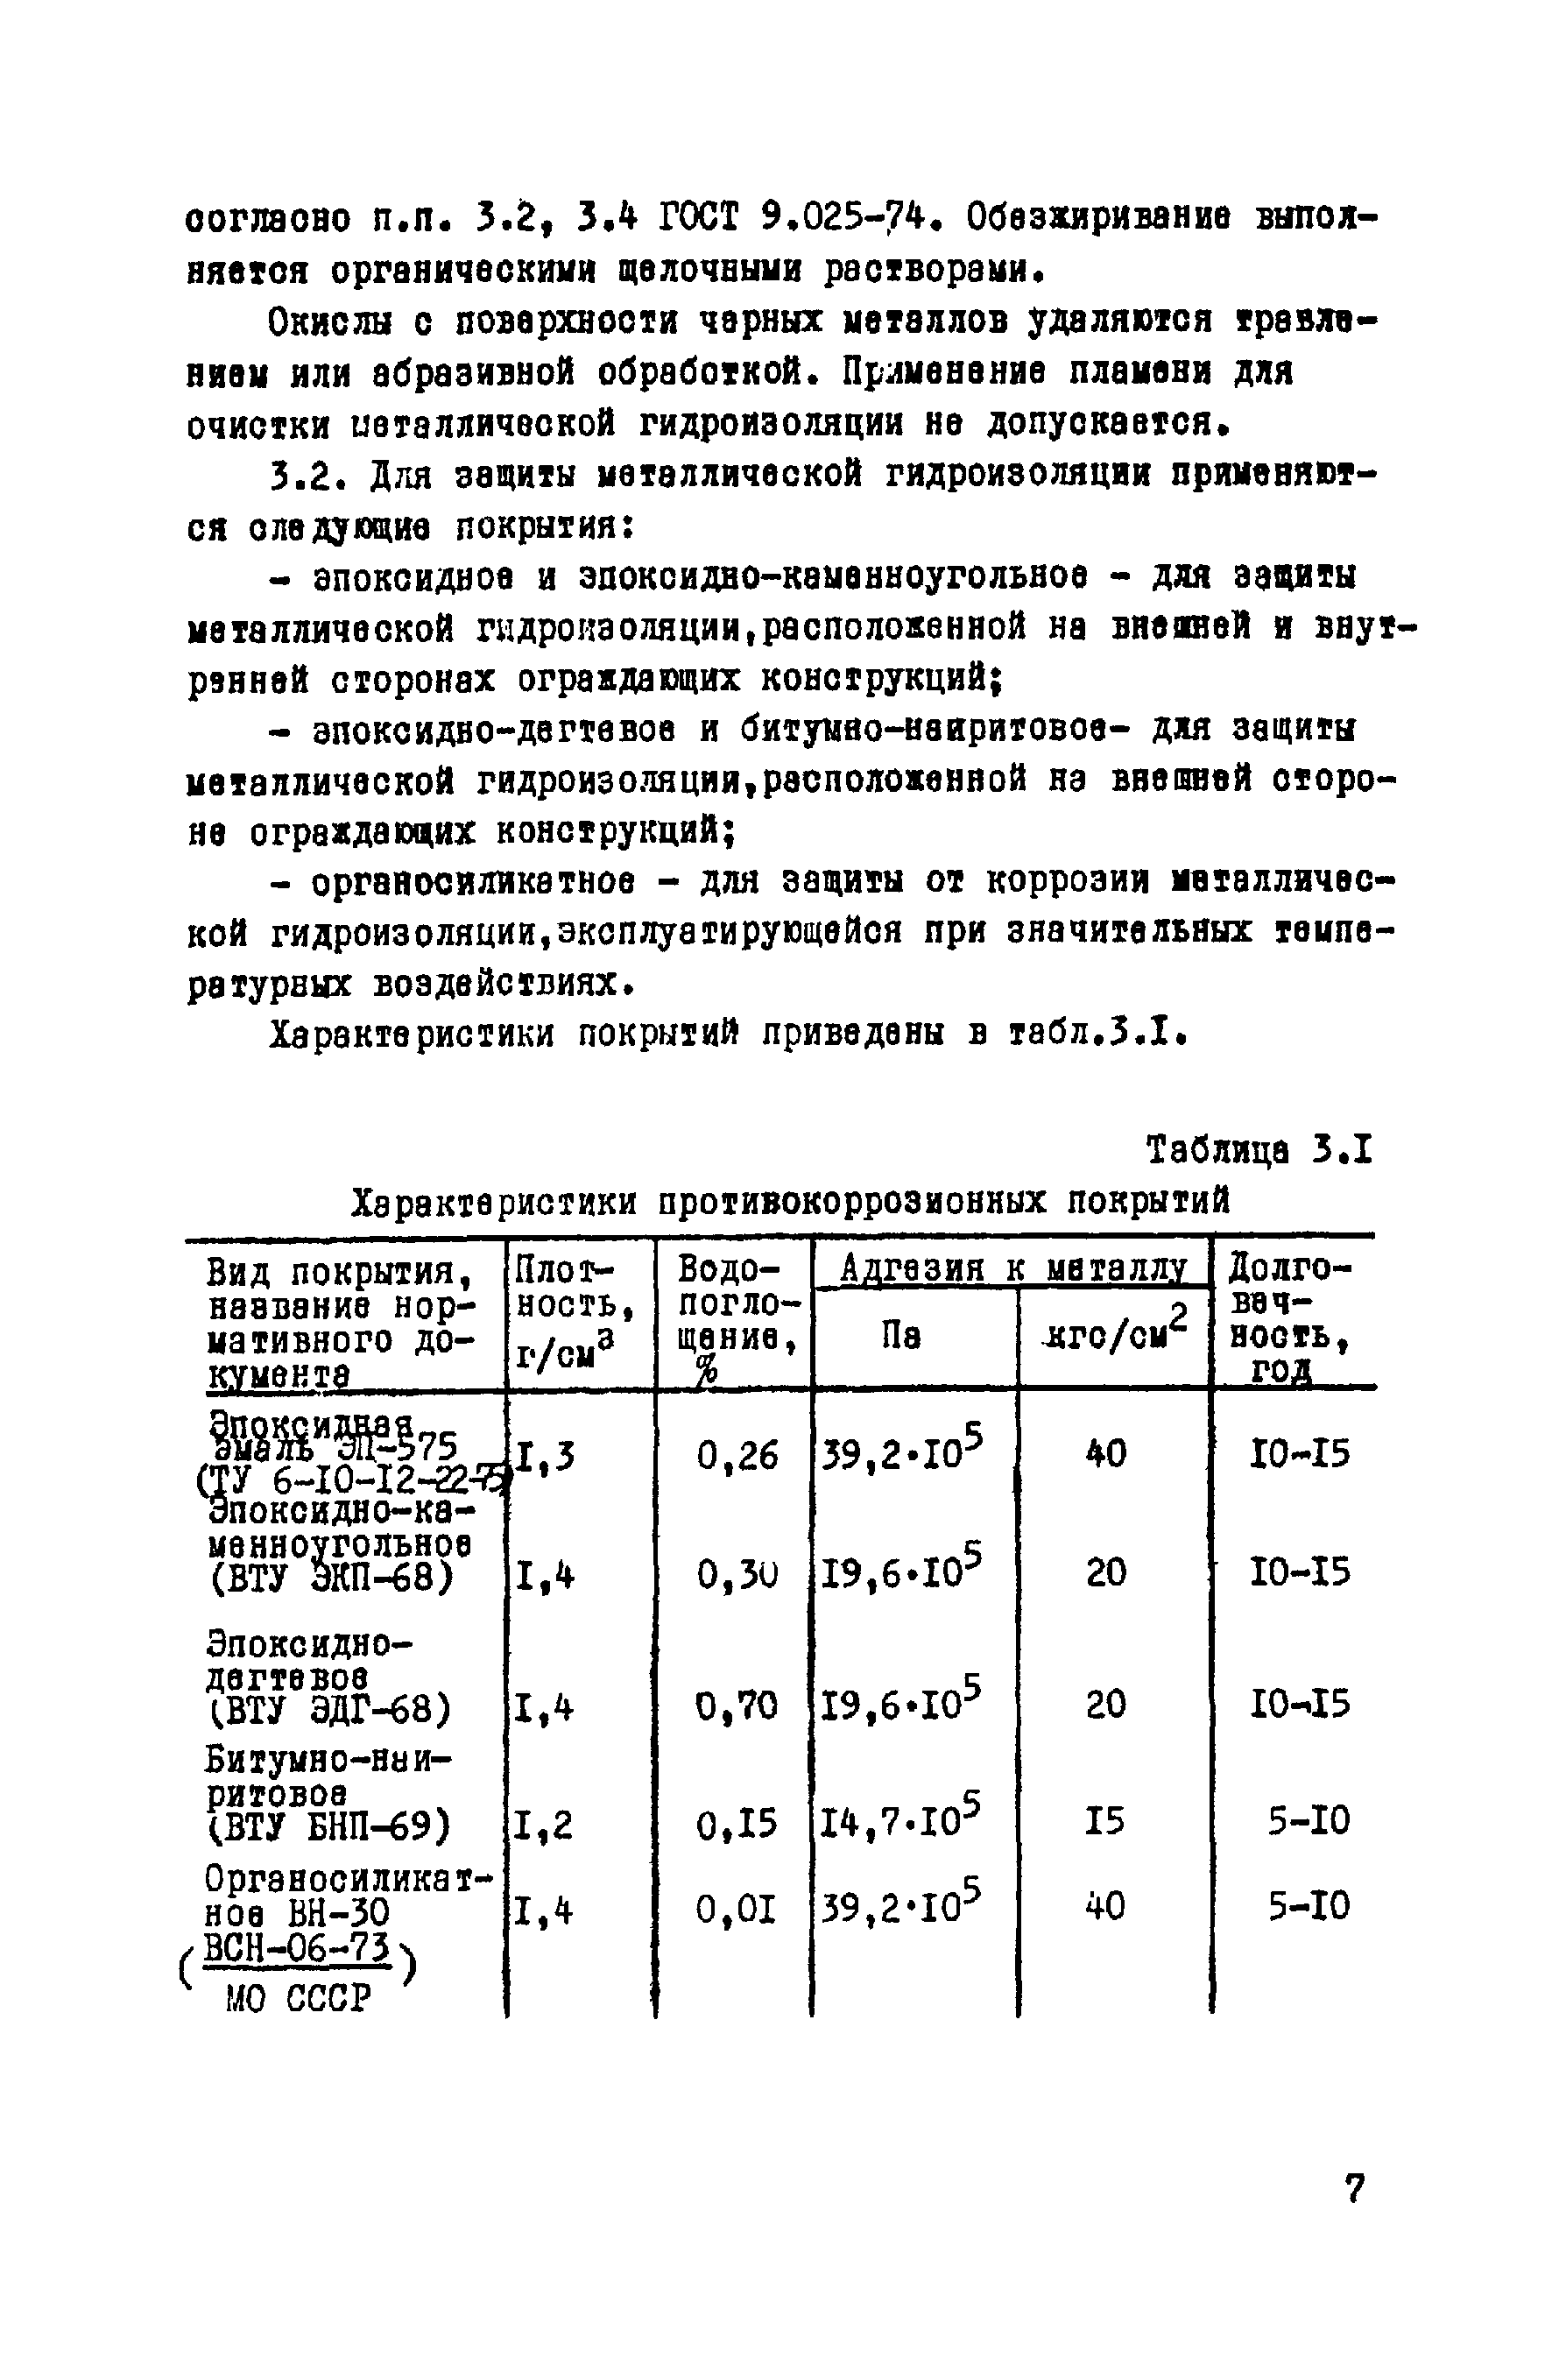 ВСН 14-75/МО СССР